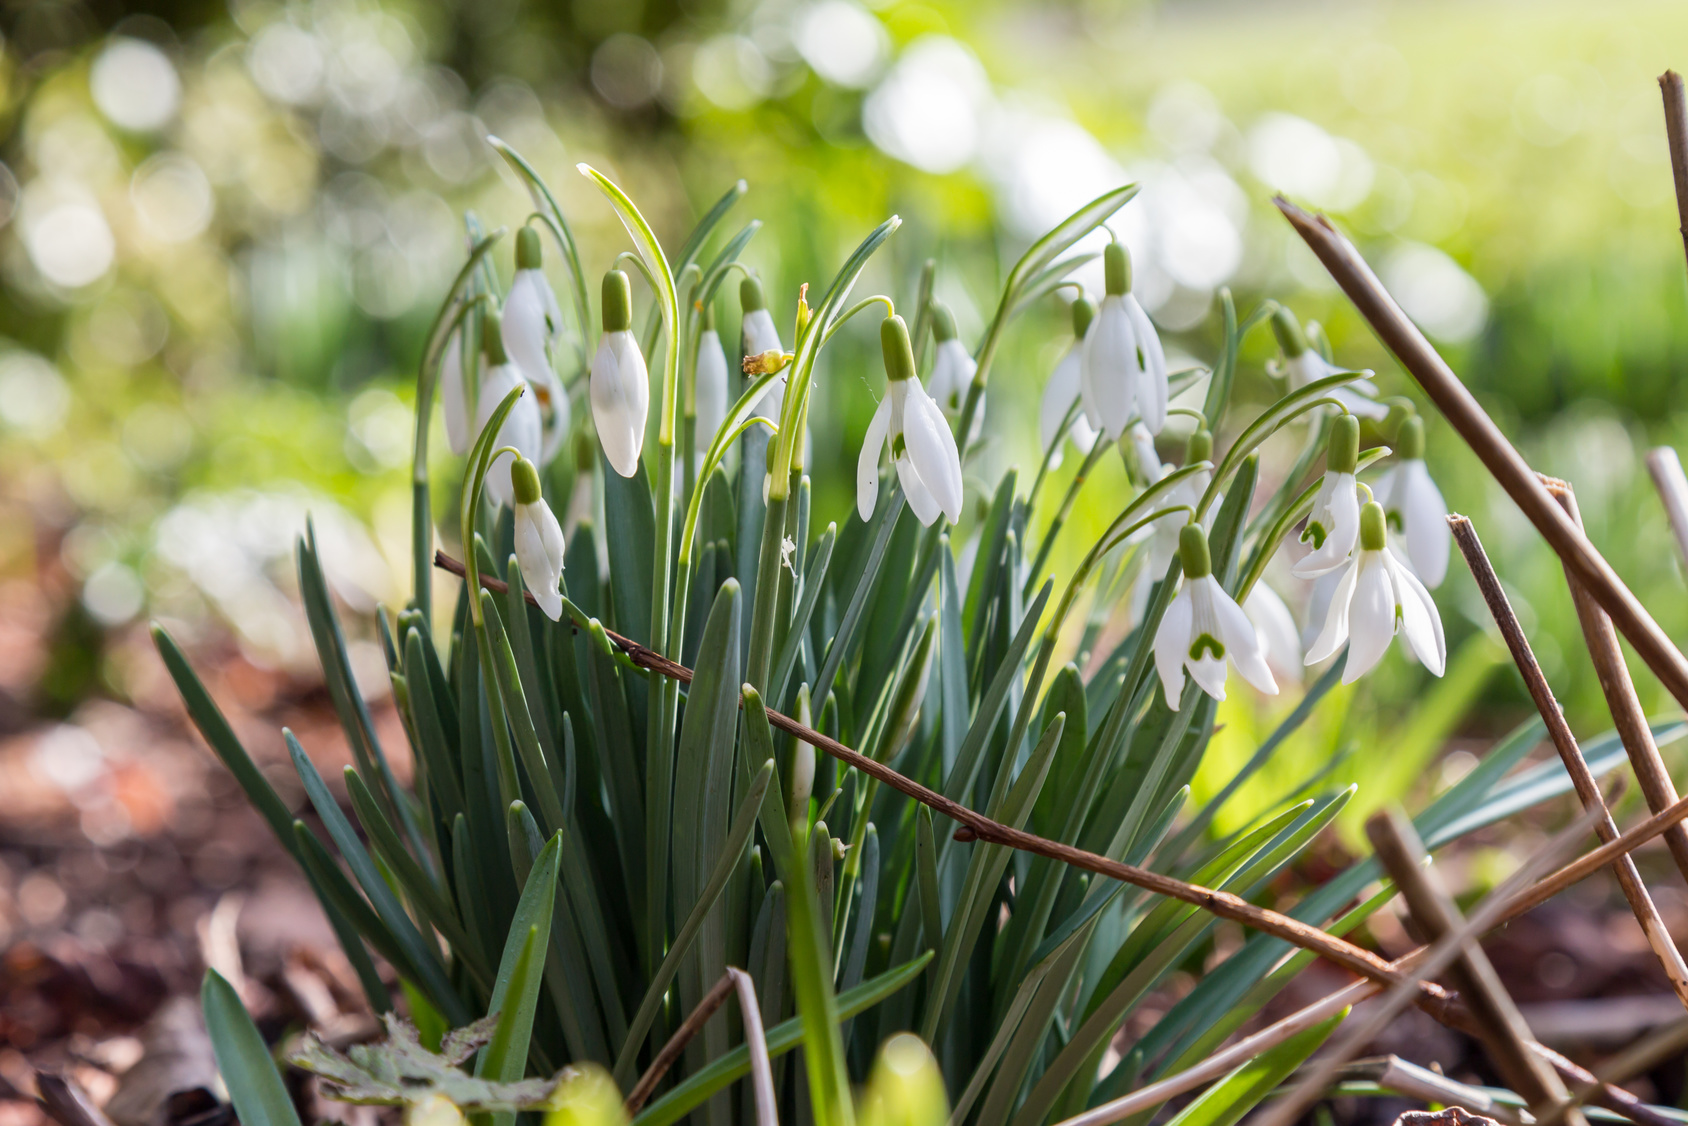 Le perce-neige, une fleur annonciatrice du printemps. © lemanieh, fotolia